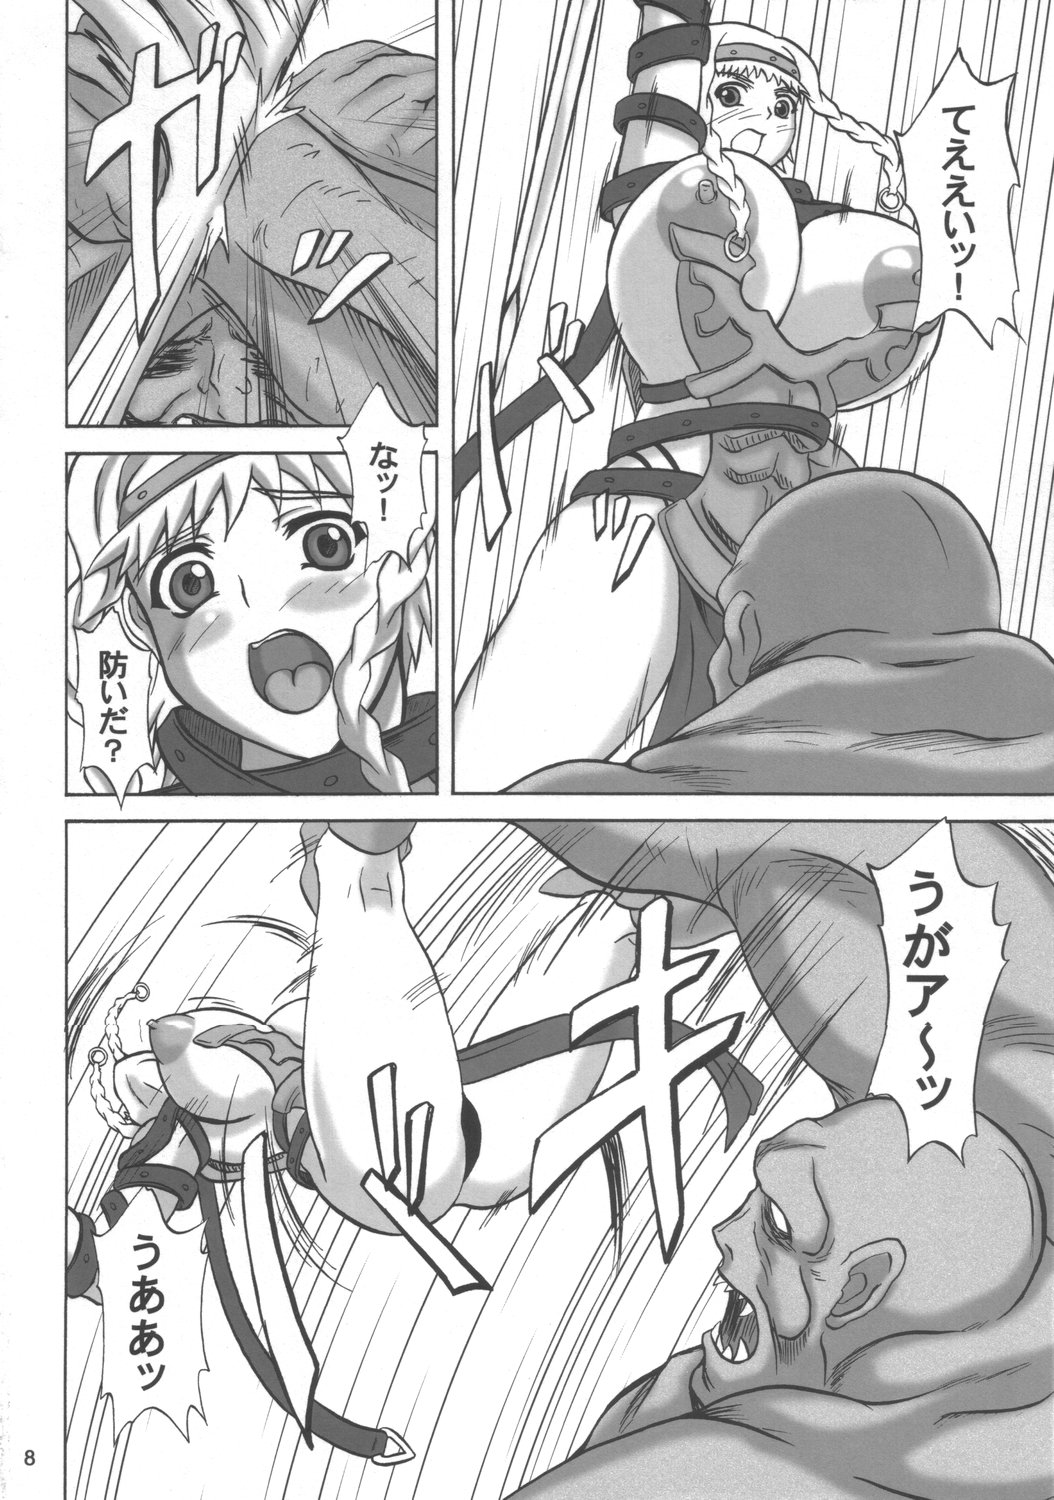 (SC33) [Anglachel (Yamamura Natsuru)] Injoku no Senshi Leina & Elina (Queen's Blade) page 7 full